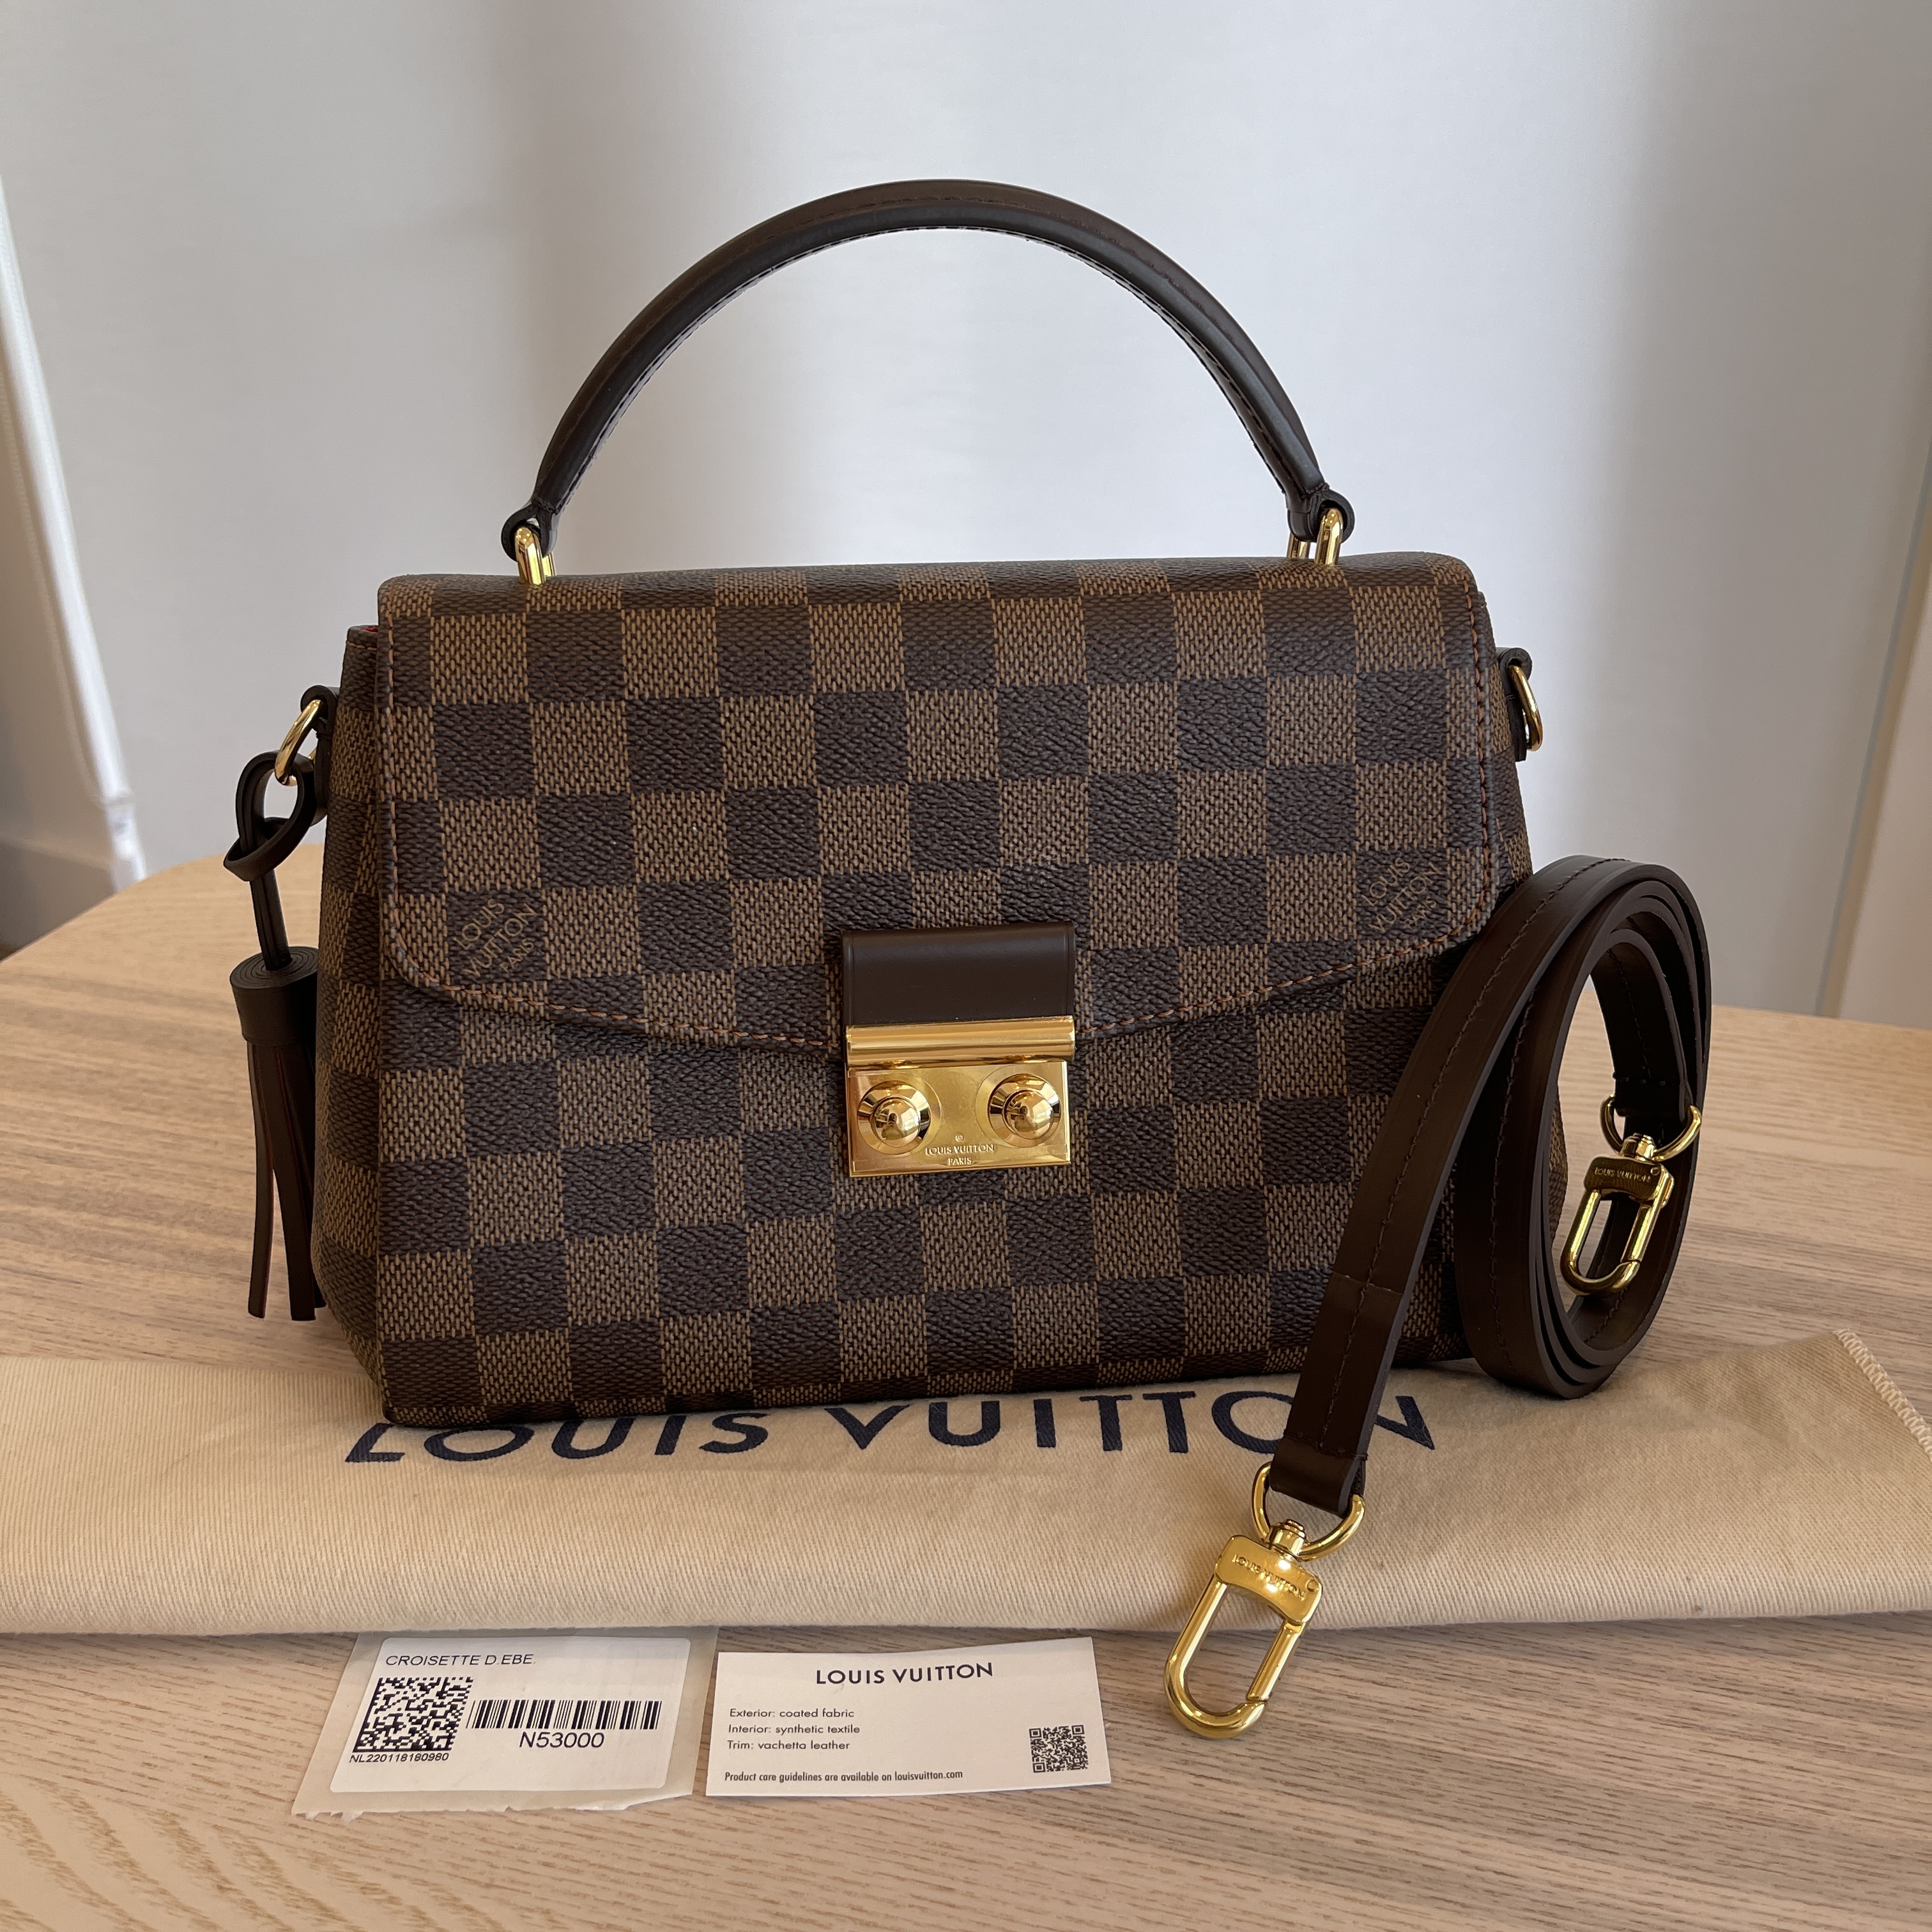 Croisette Bag Damier Ebene Canvas - Handbags N53000